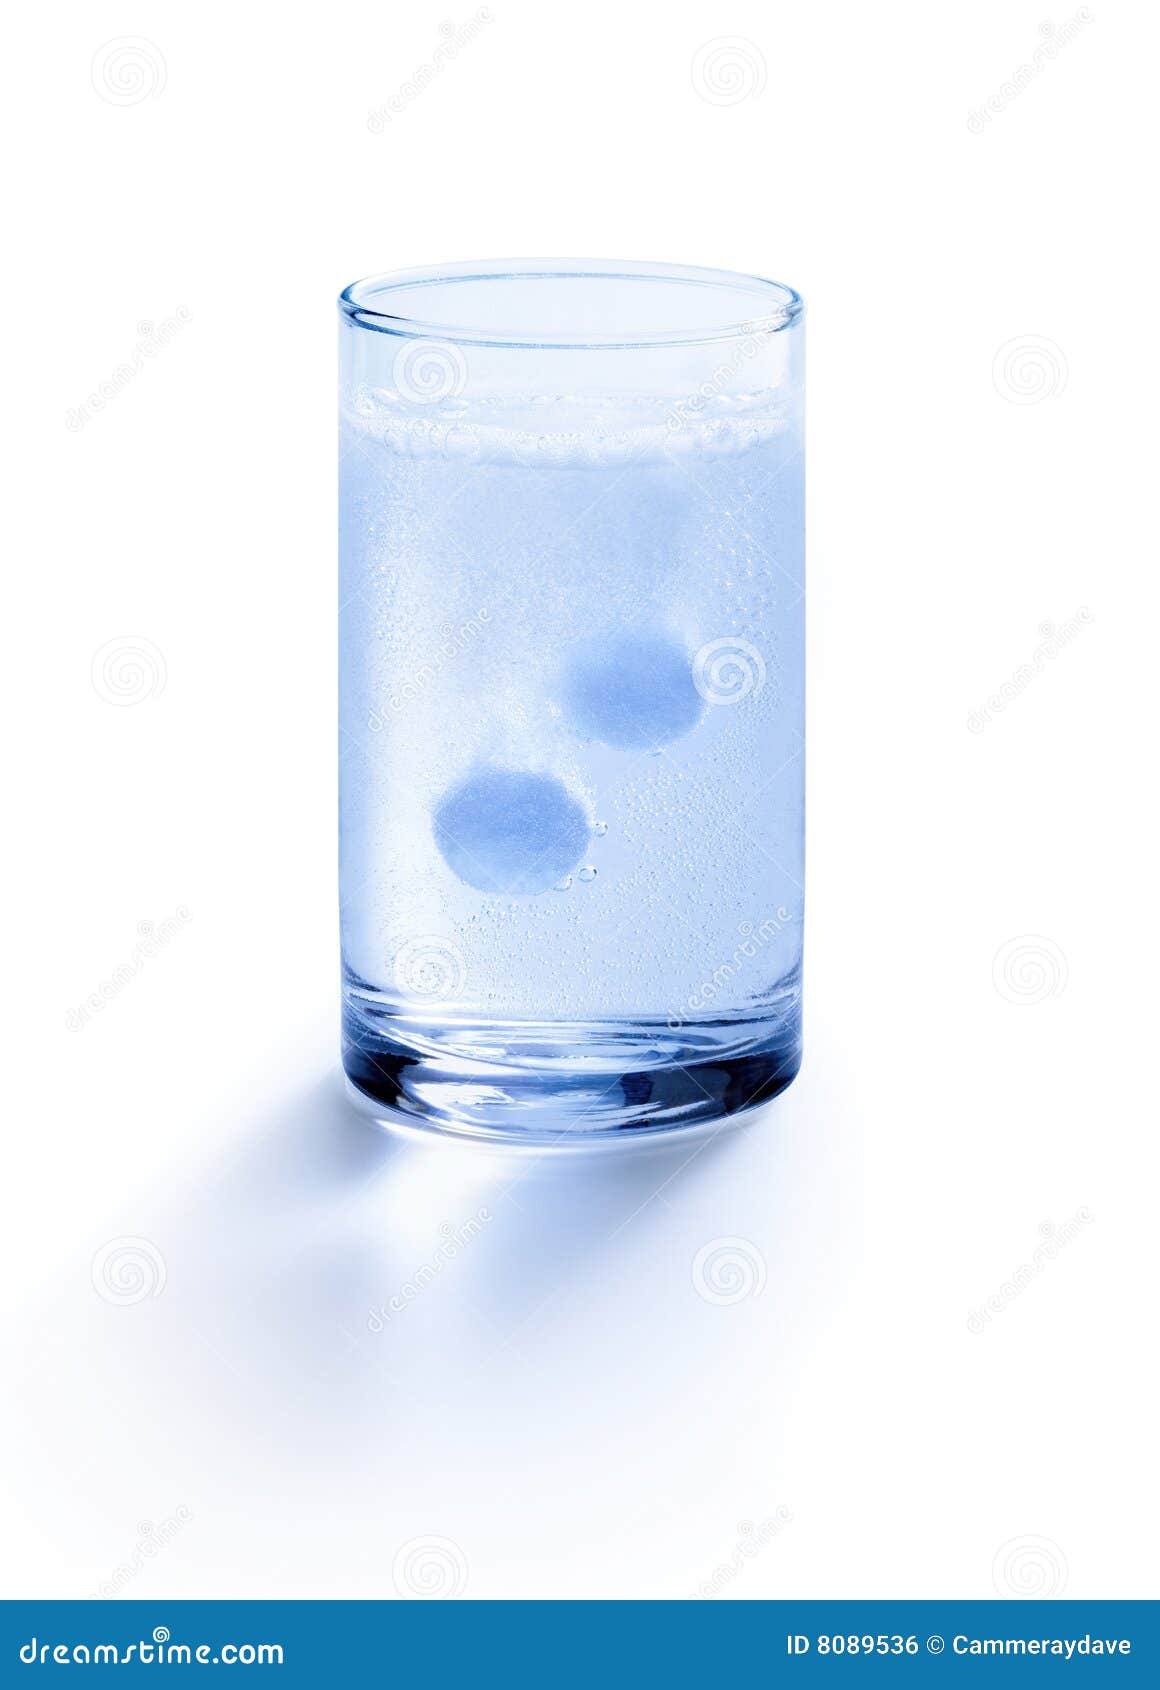 antacid aspirin seltzer glass water